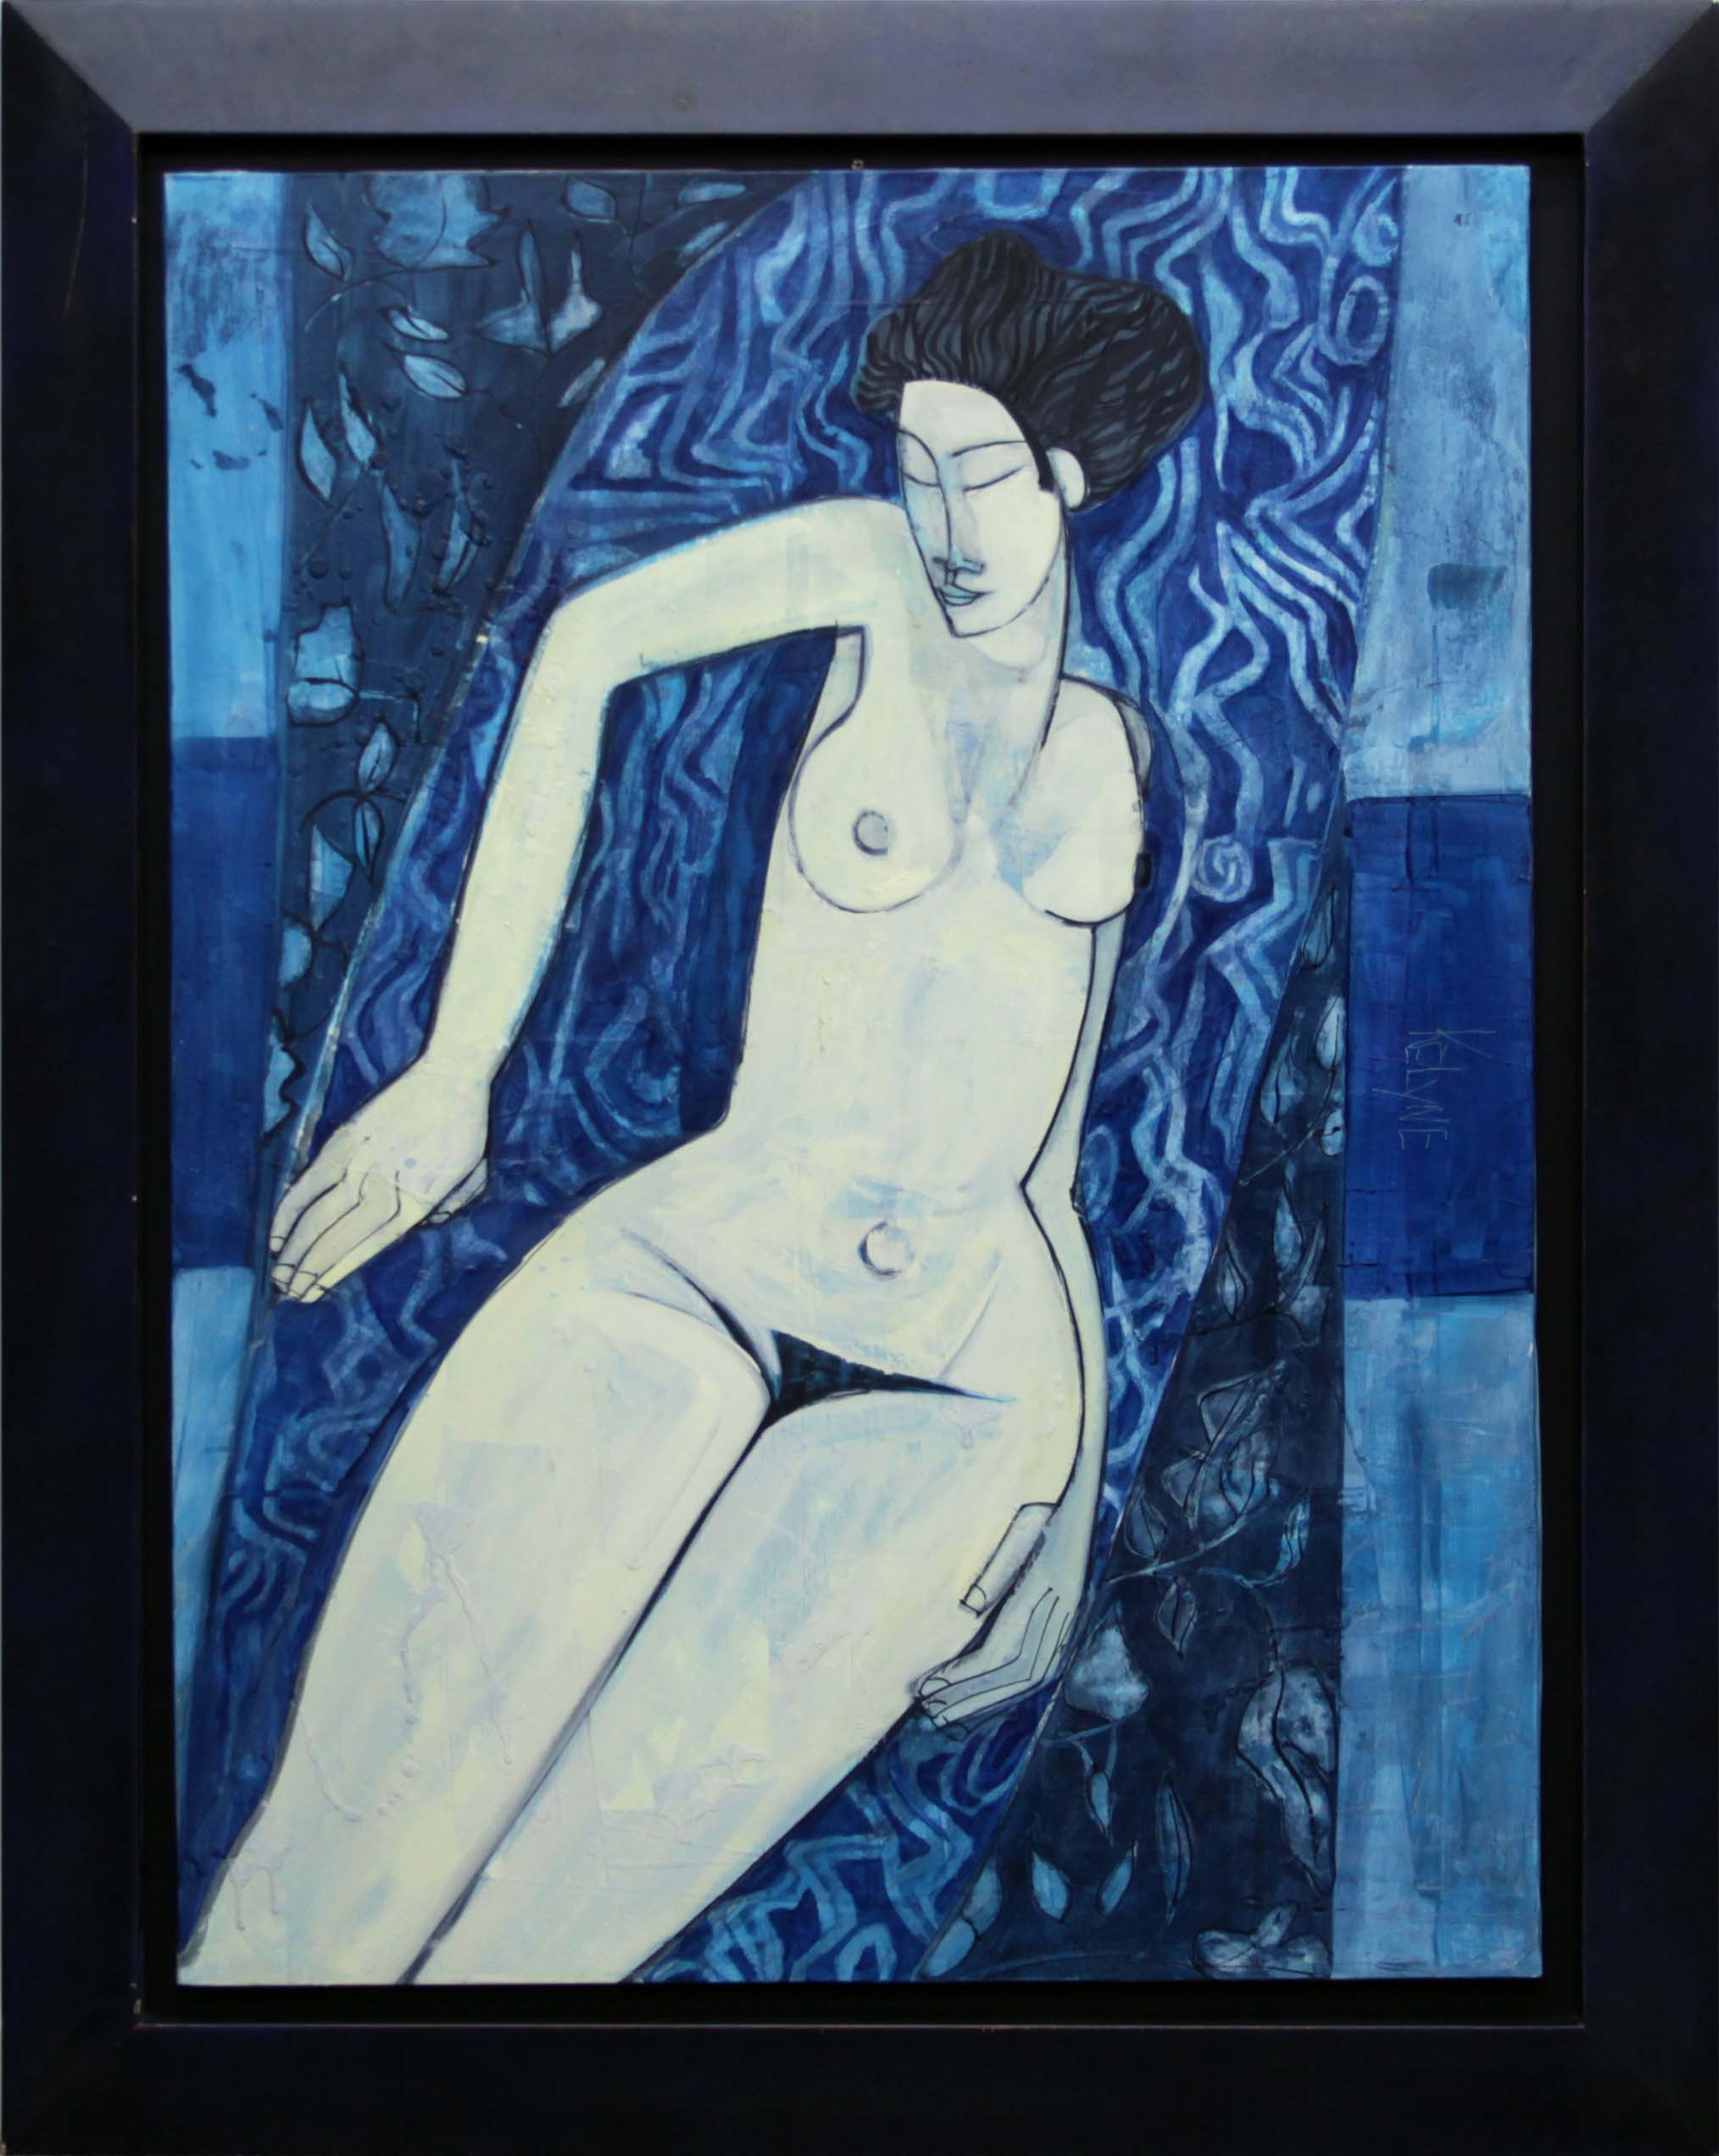 Kelyne, Vietnamese (born 1955) Oil on Canvas, "La toute puissance de la nuit"